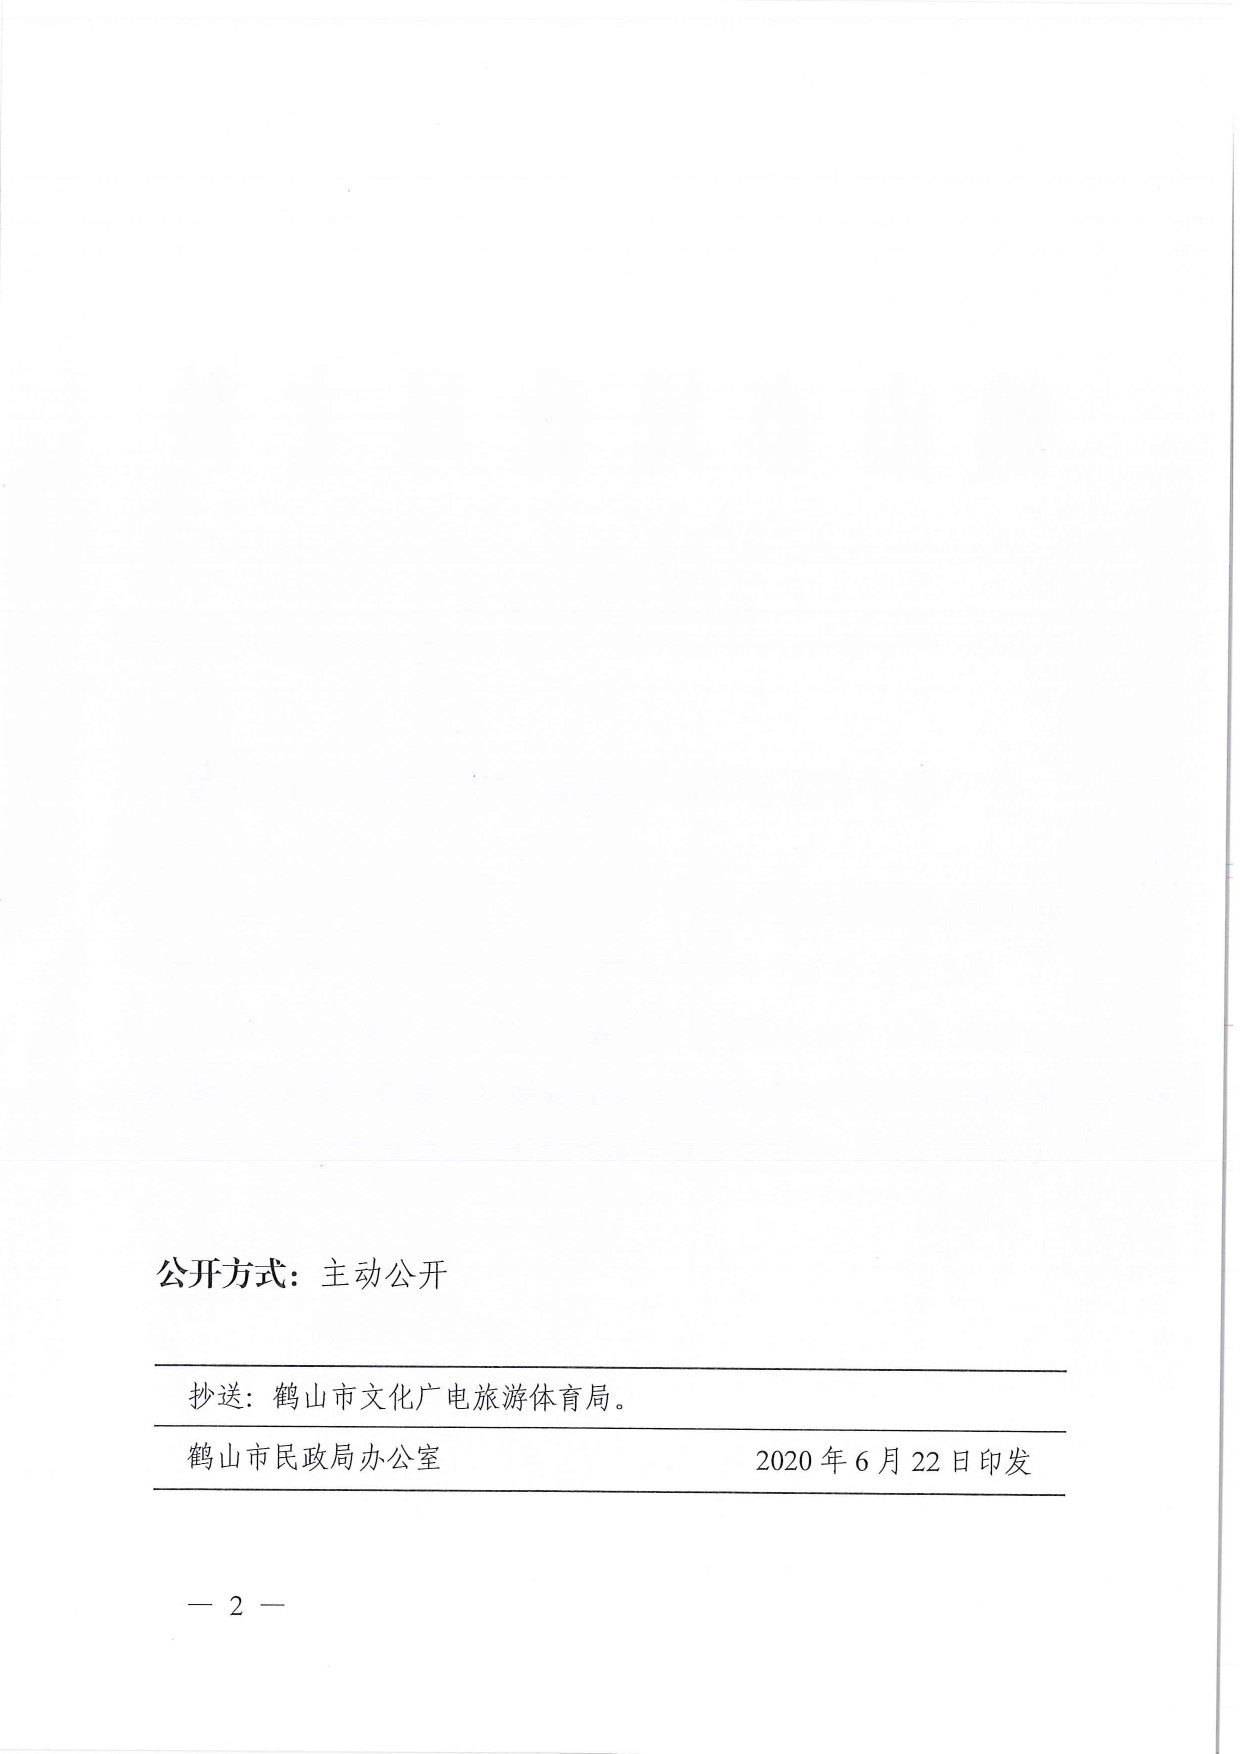 鹤民社〔2020〕31号关于准予鹤山市跆拳道协会成立登记的批复-2.jpg